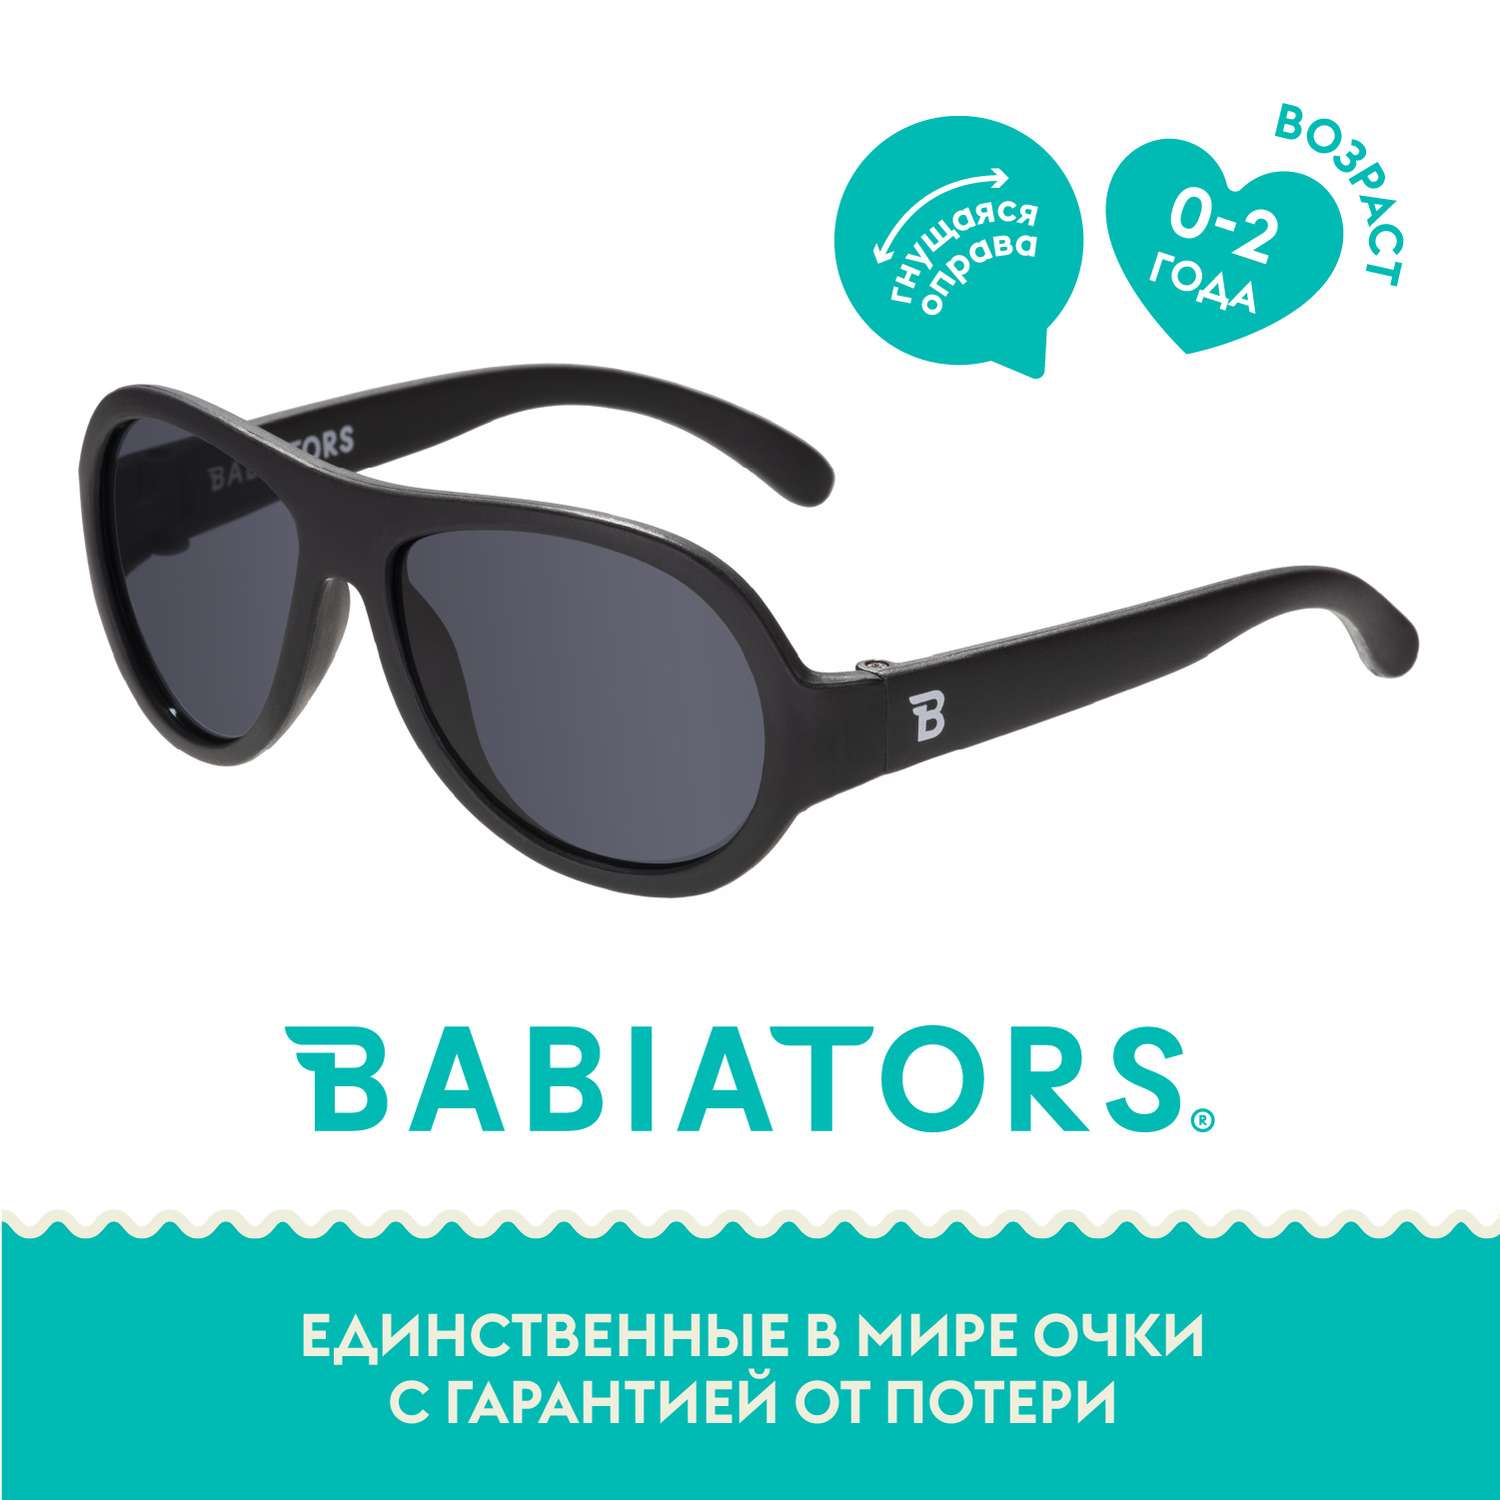 Солнцезащитные очки Babiators Aviator Чёрный спецназ 0-2 BAB-001 - фото 1